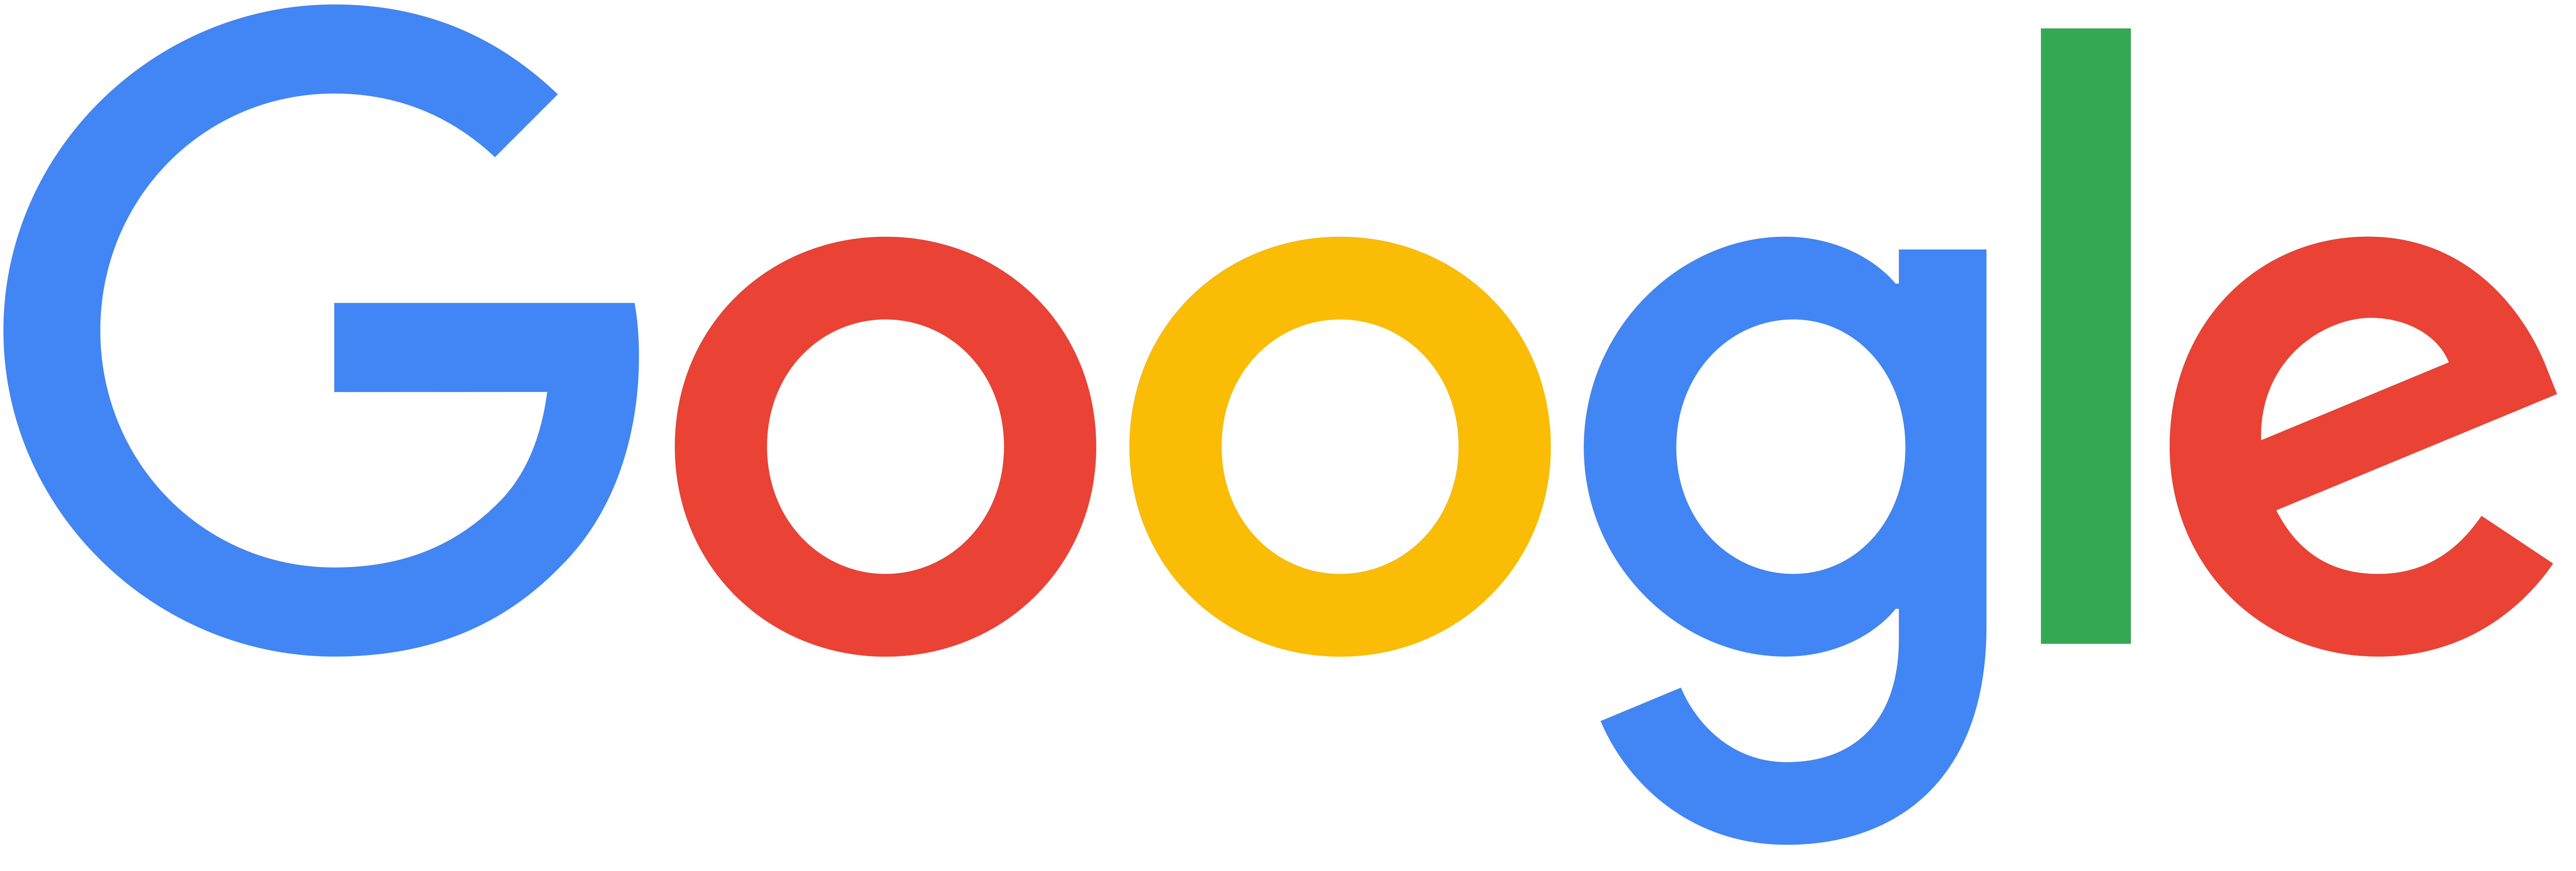 Google Logo 2015 PNG Image.